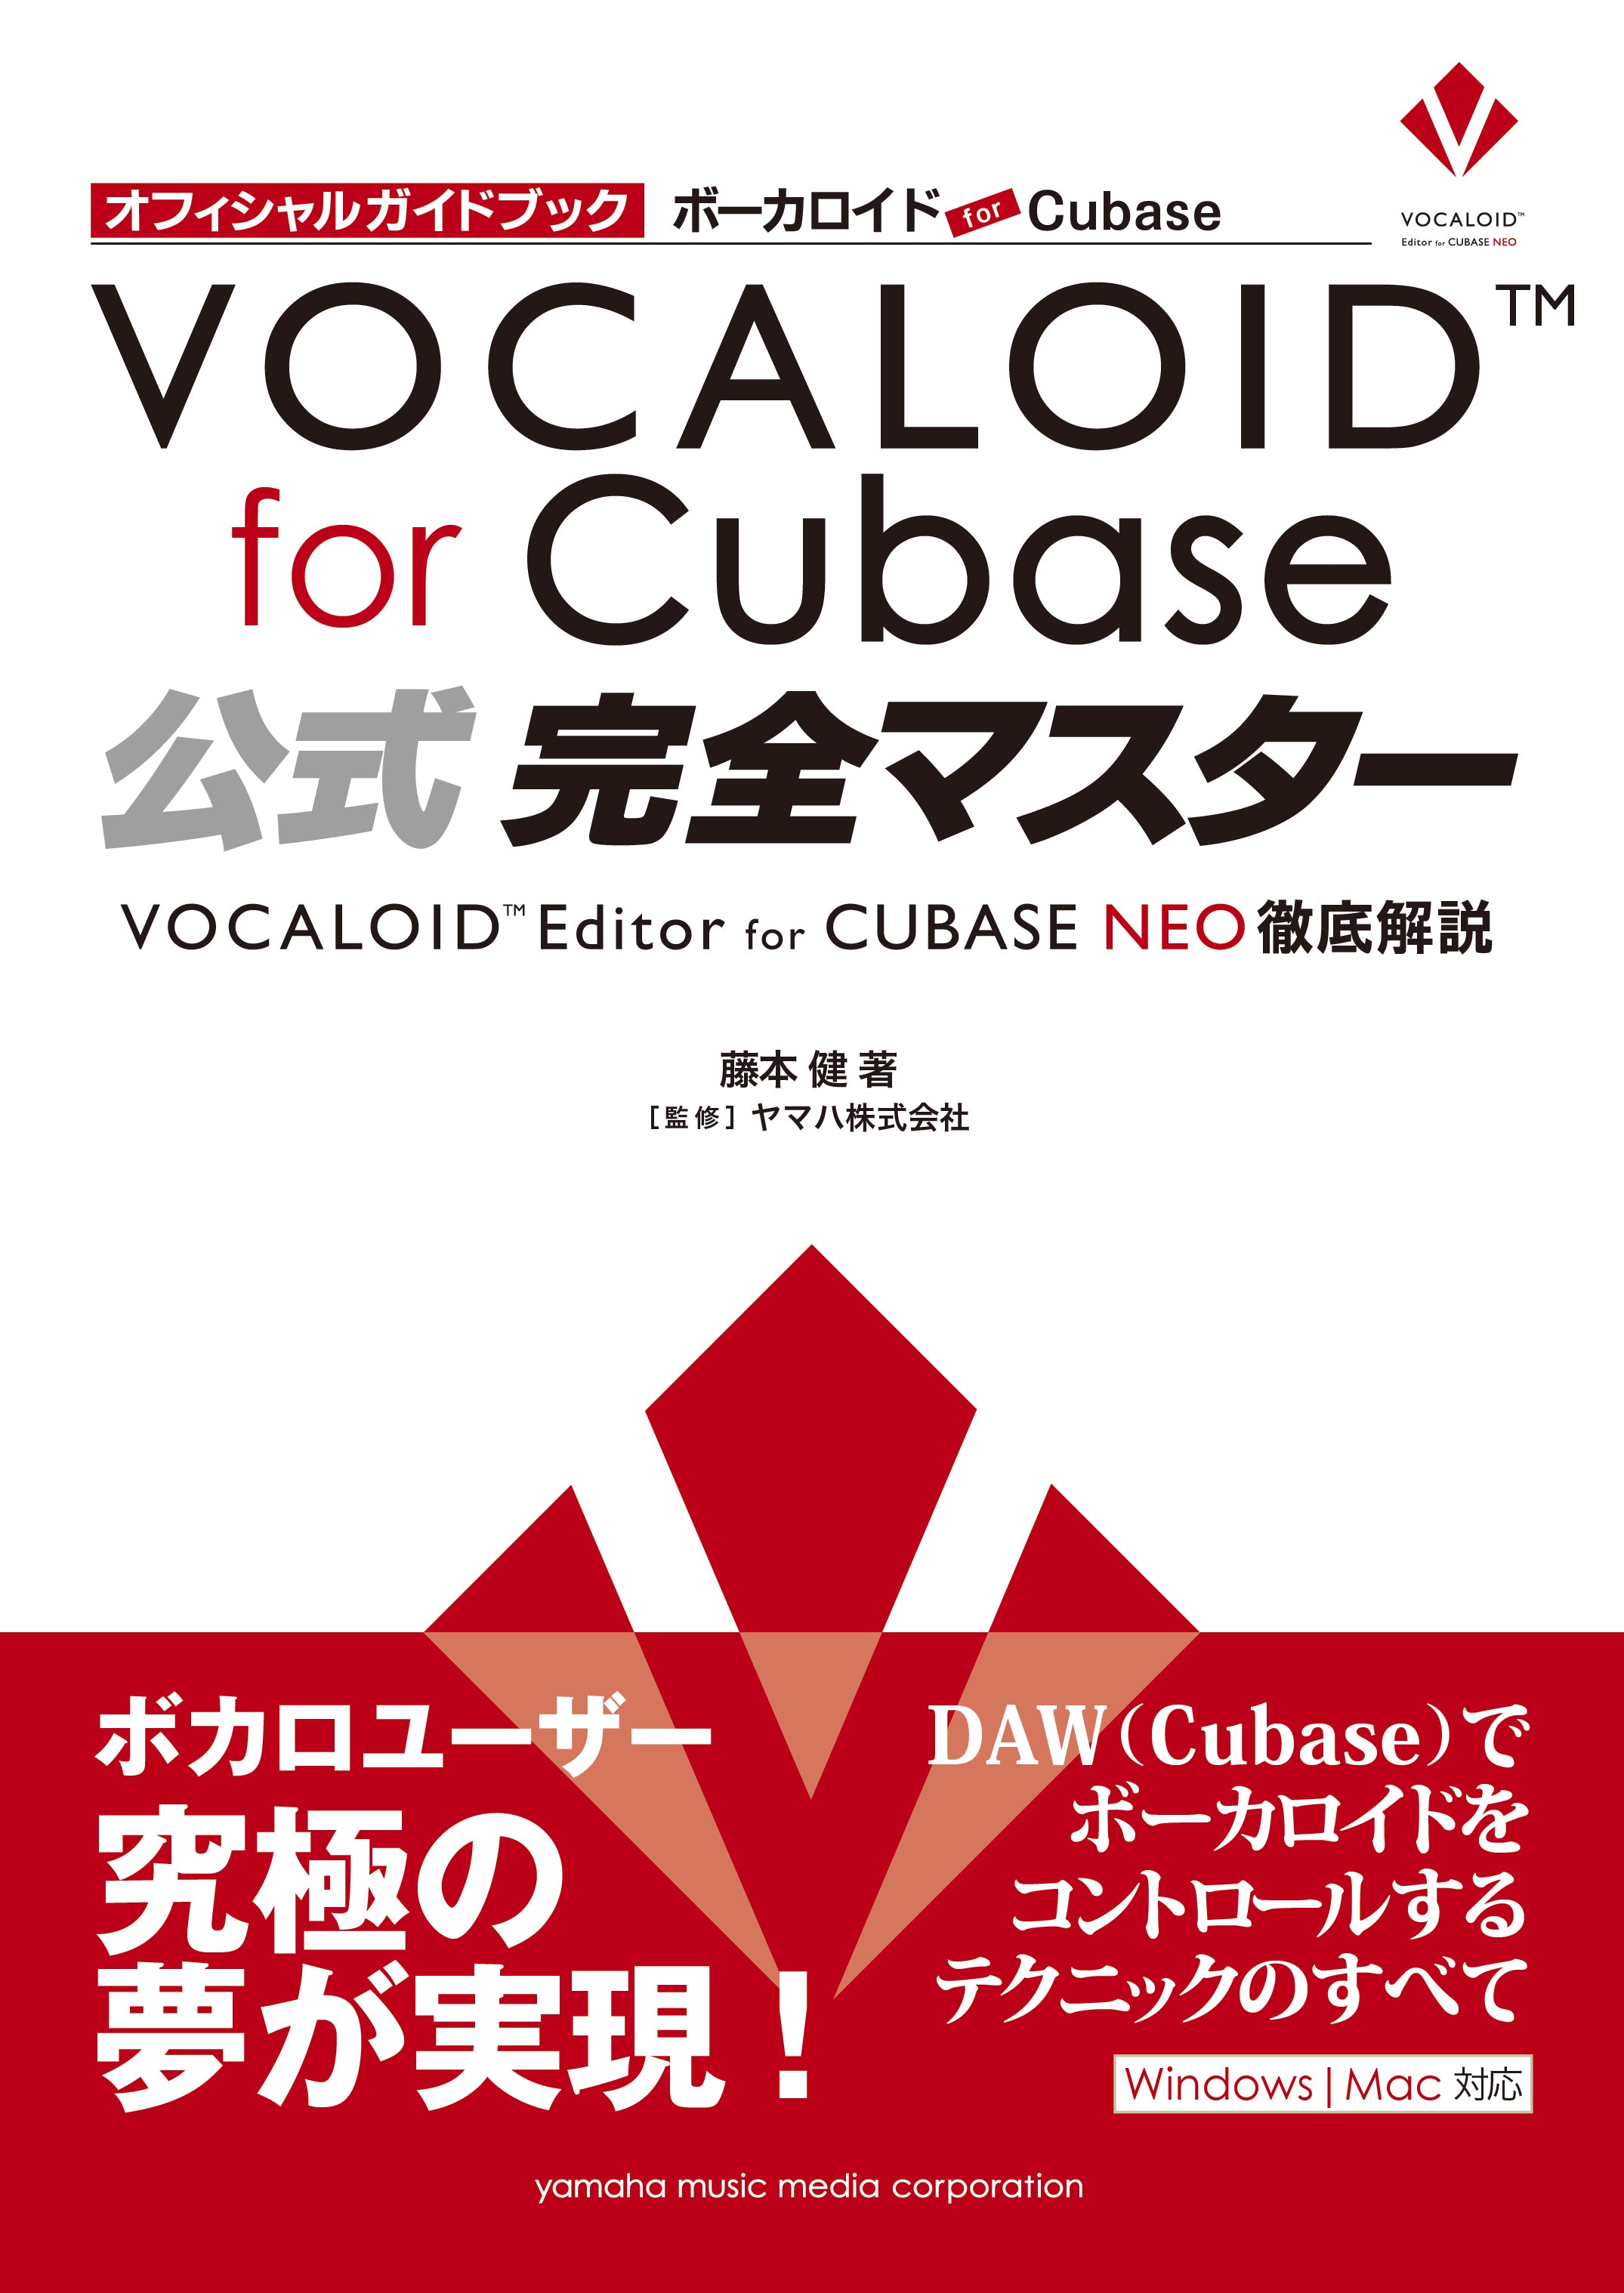 ボーカロイド for Cubase 公式完全マスター - VOCALOID Editor for CUBASE NEO 徹底解説 -